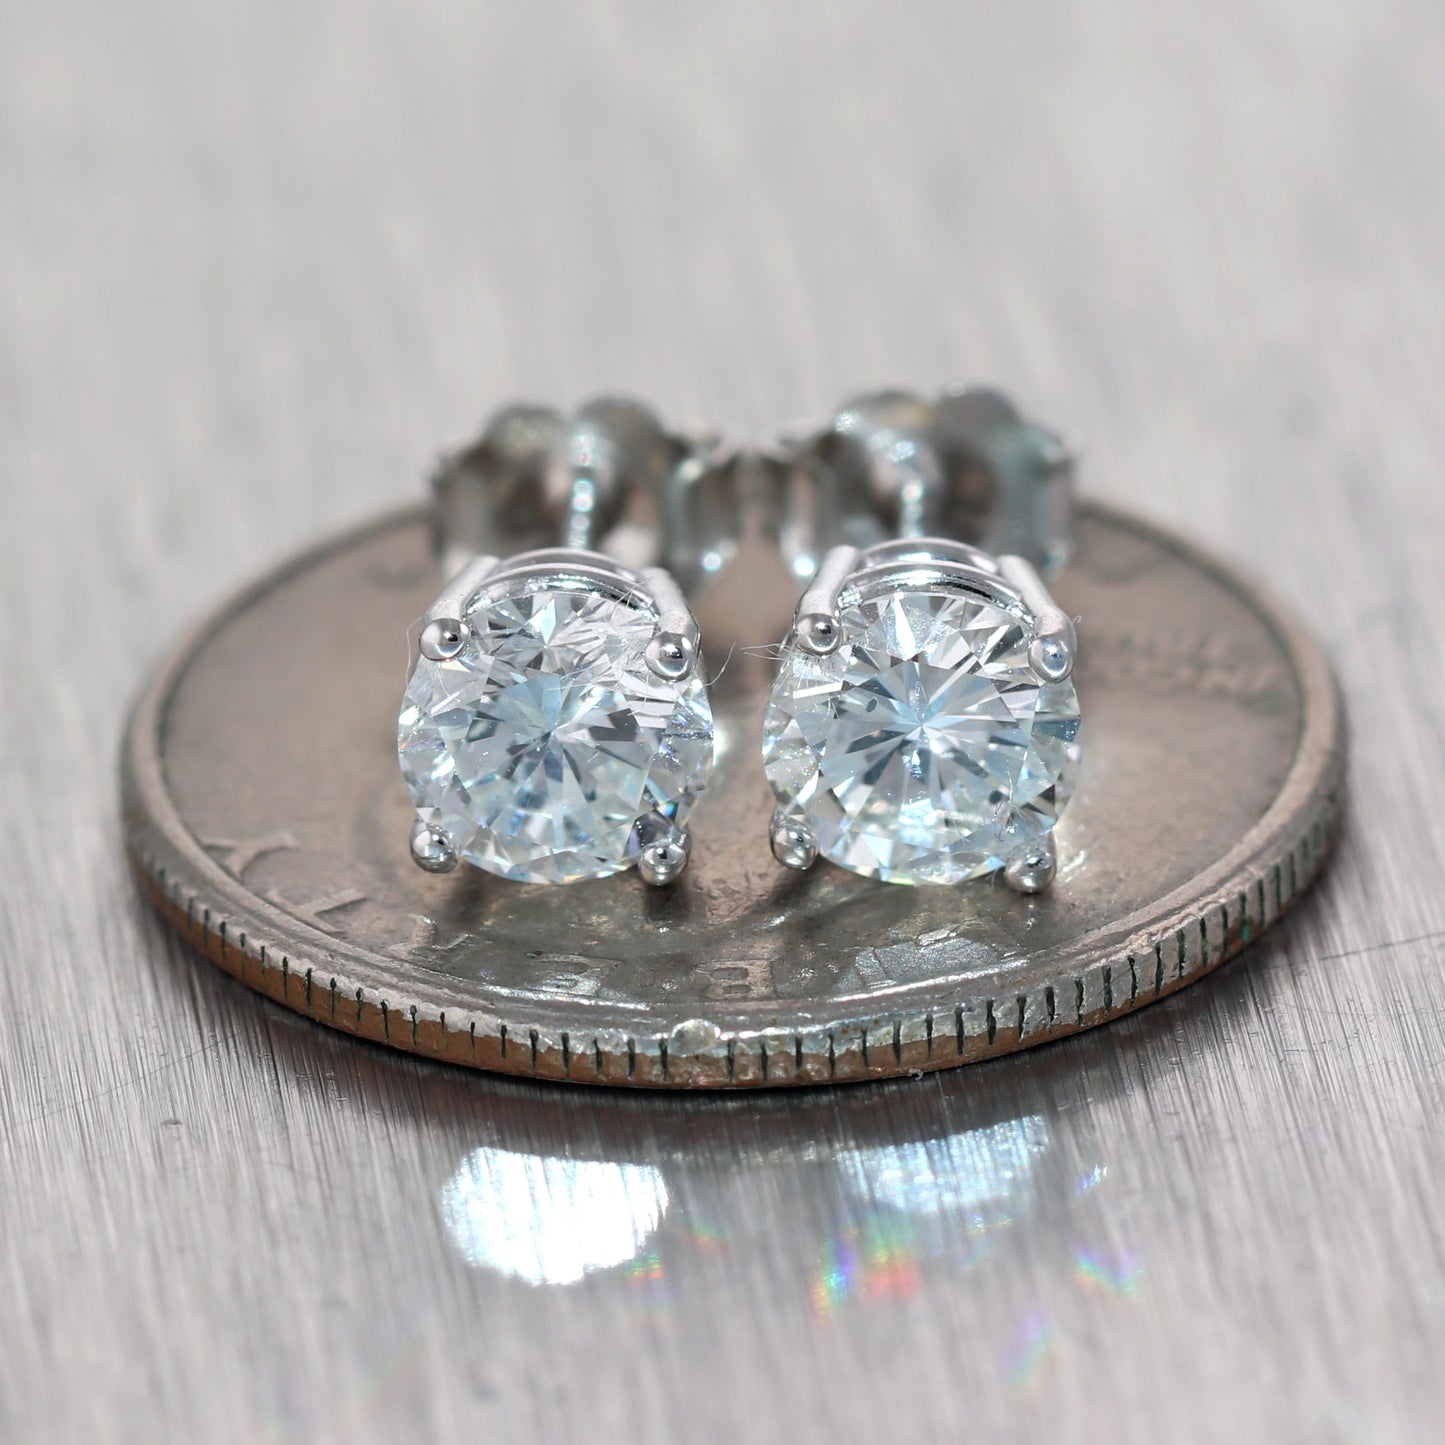 GIA 1.72ct Round Brilliant G SI1 Diamond 14k White Gold Stud Earrings